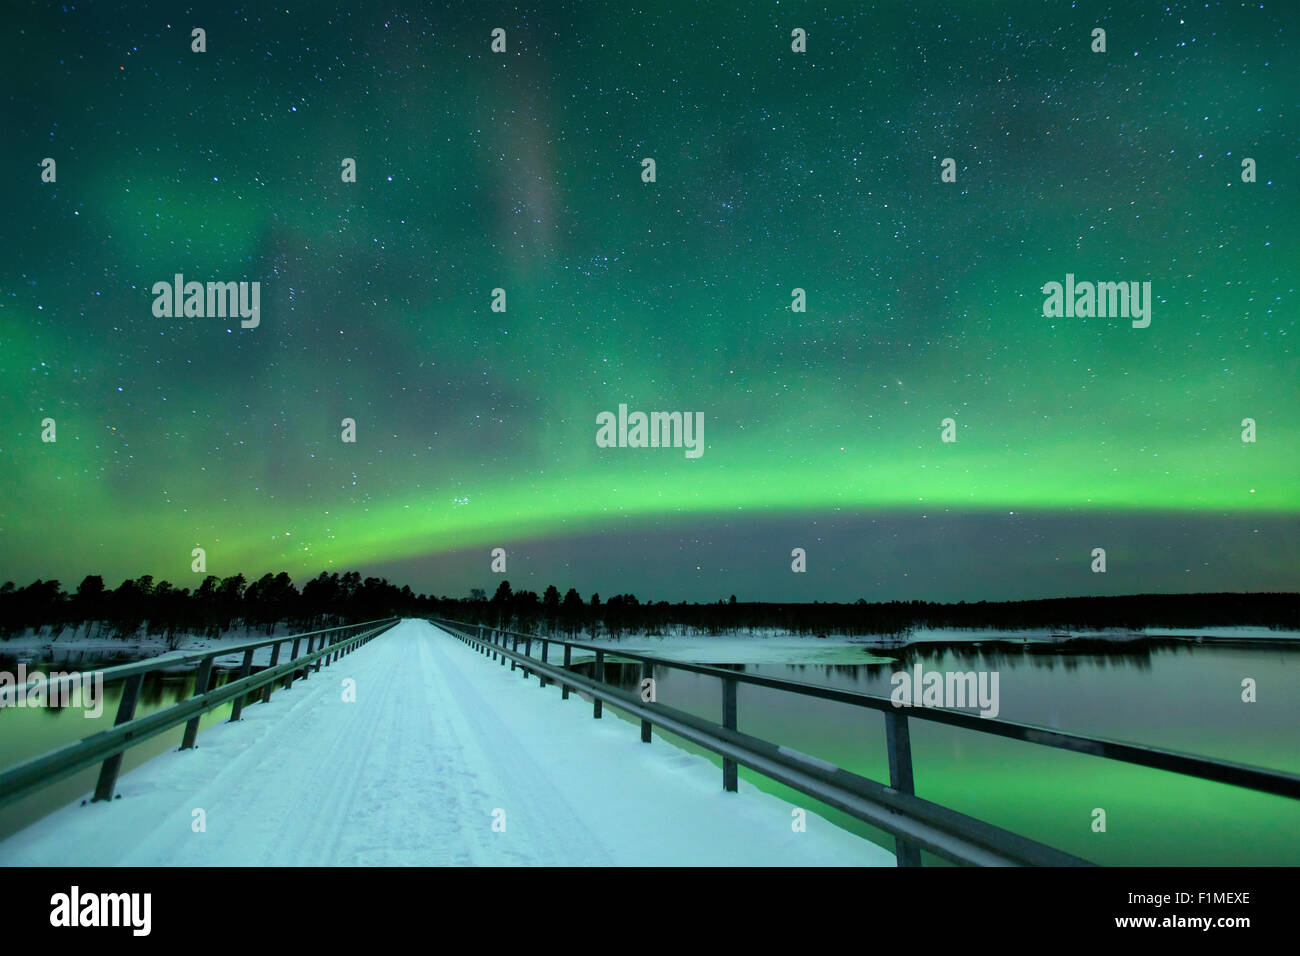 Des aurores boréales) sur un pont et une rivière dans un paysage d'hiver enneigé en Laponie finlandaise. Banque D'Images